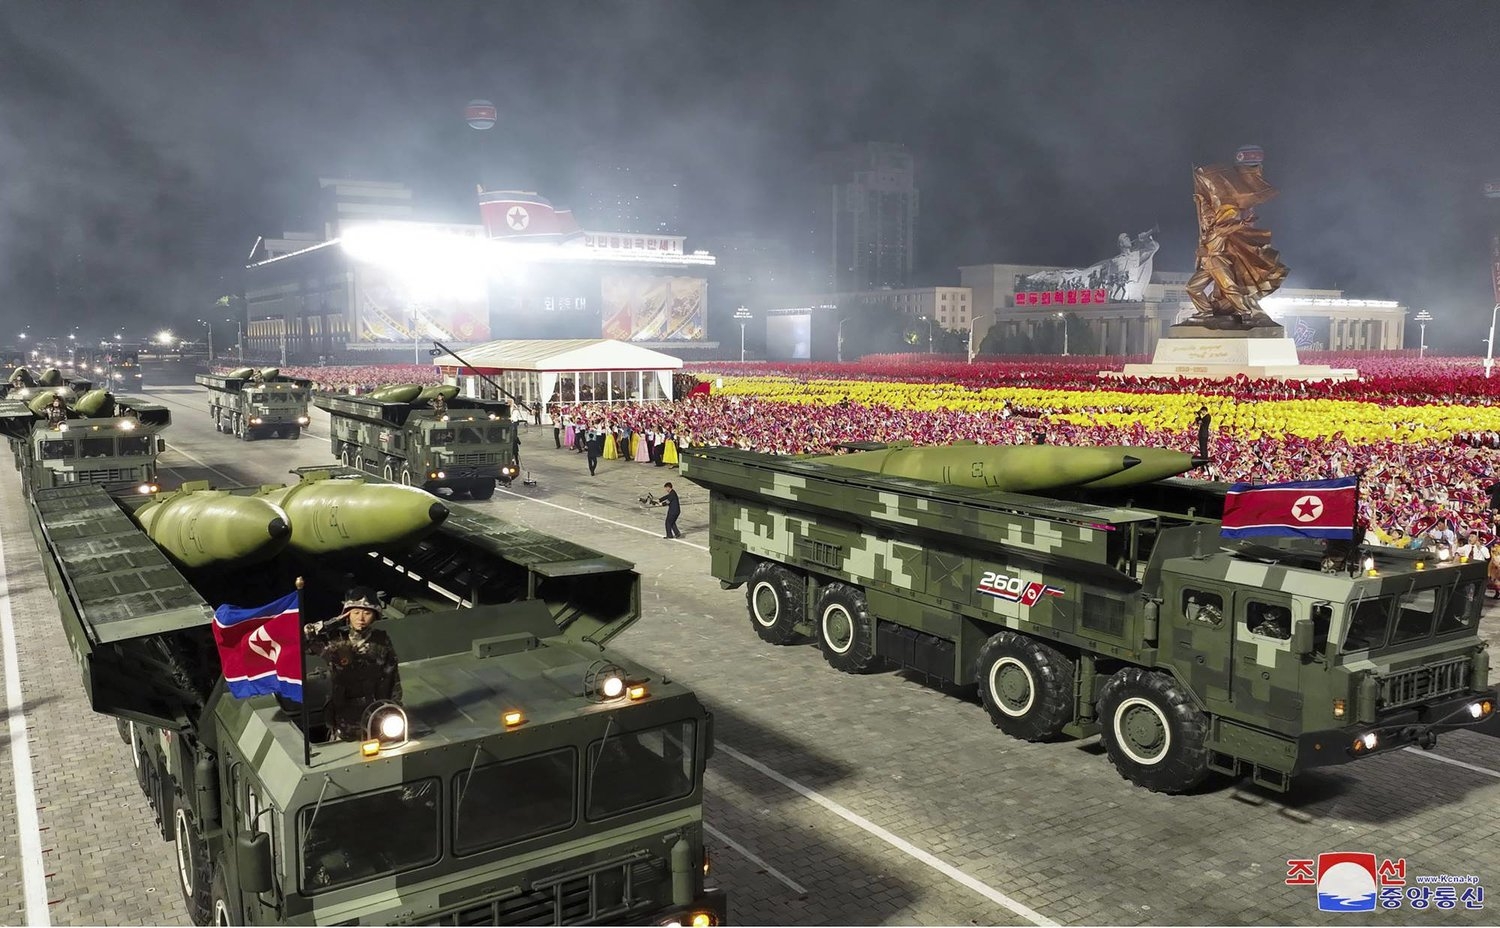 كوريا الشمالية تدافع عن امتلاكها أسلحة نووية: «حق سيادي»